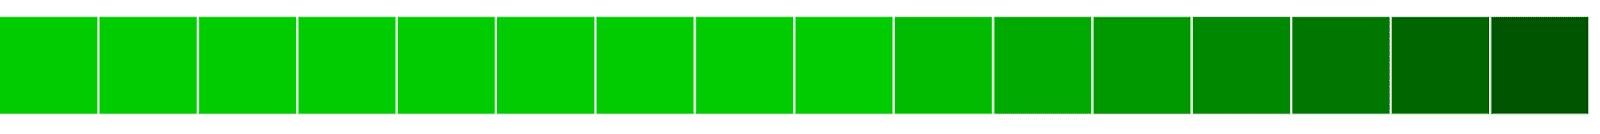 हल्के से गहरे रंग की ओर जाने वाले हरे ब्लॉक का हॉरिज़ॉन्टल अलाइनमेंट.